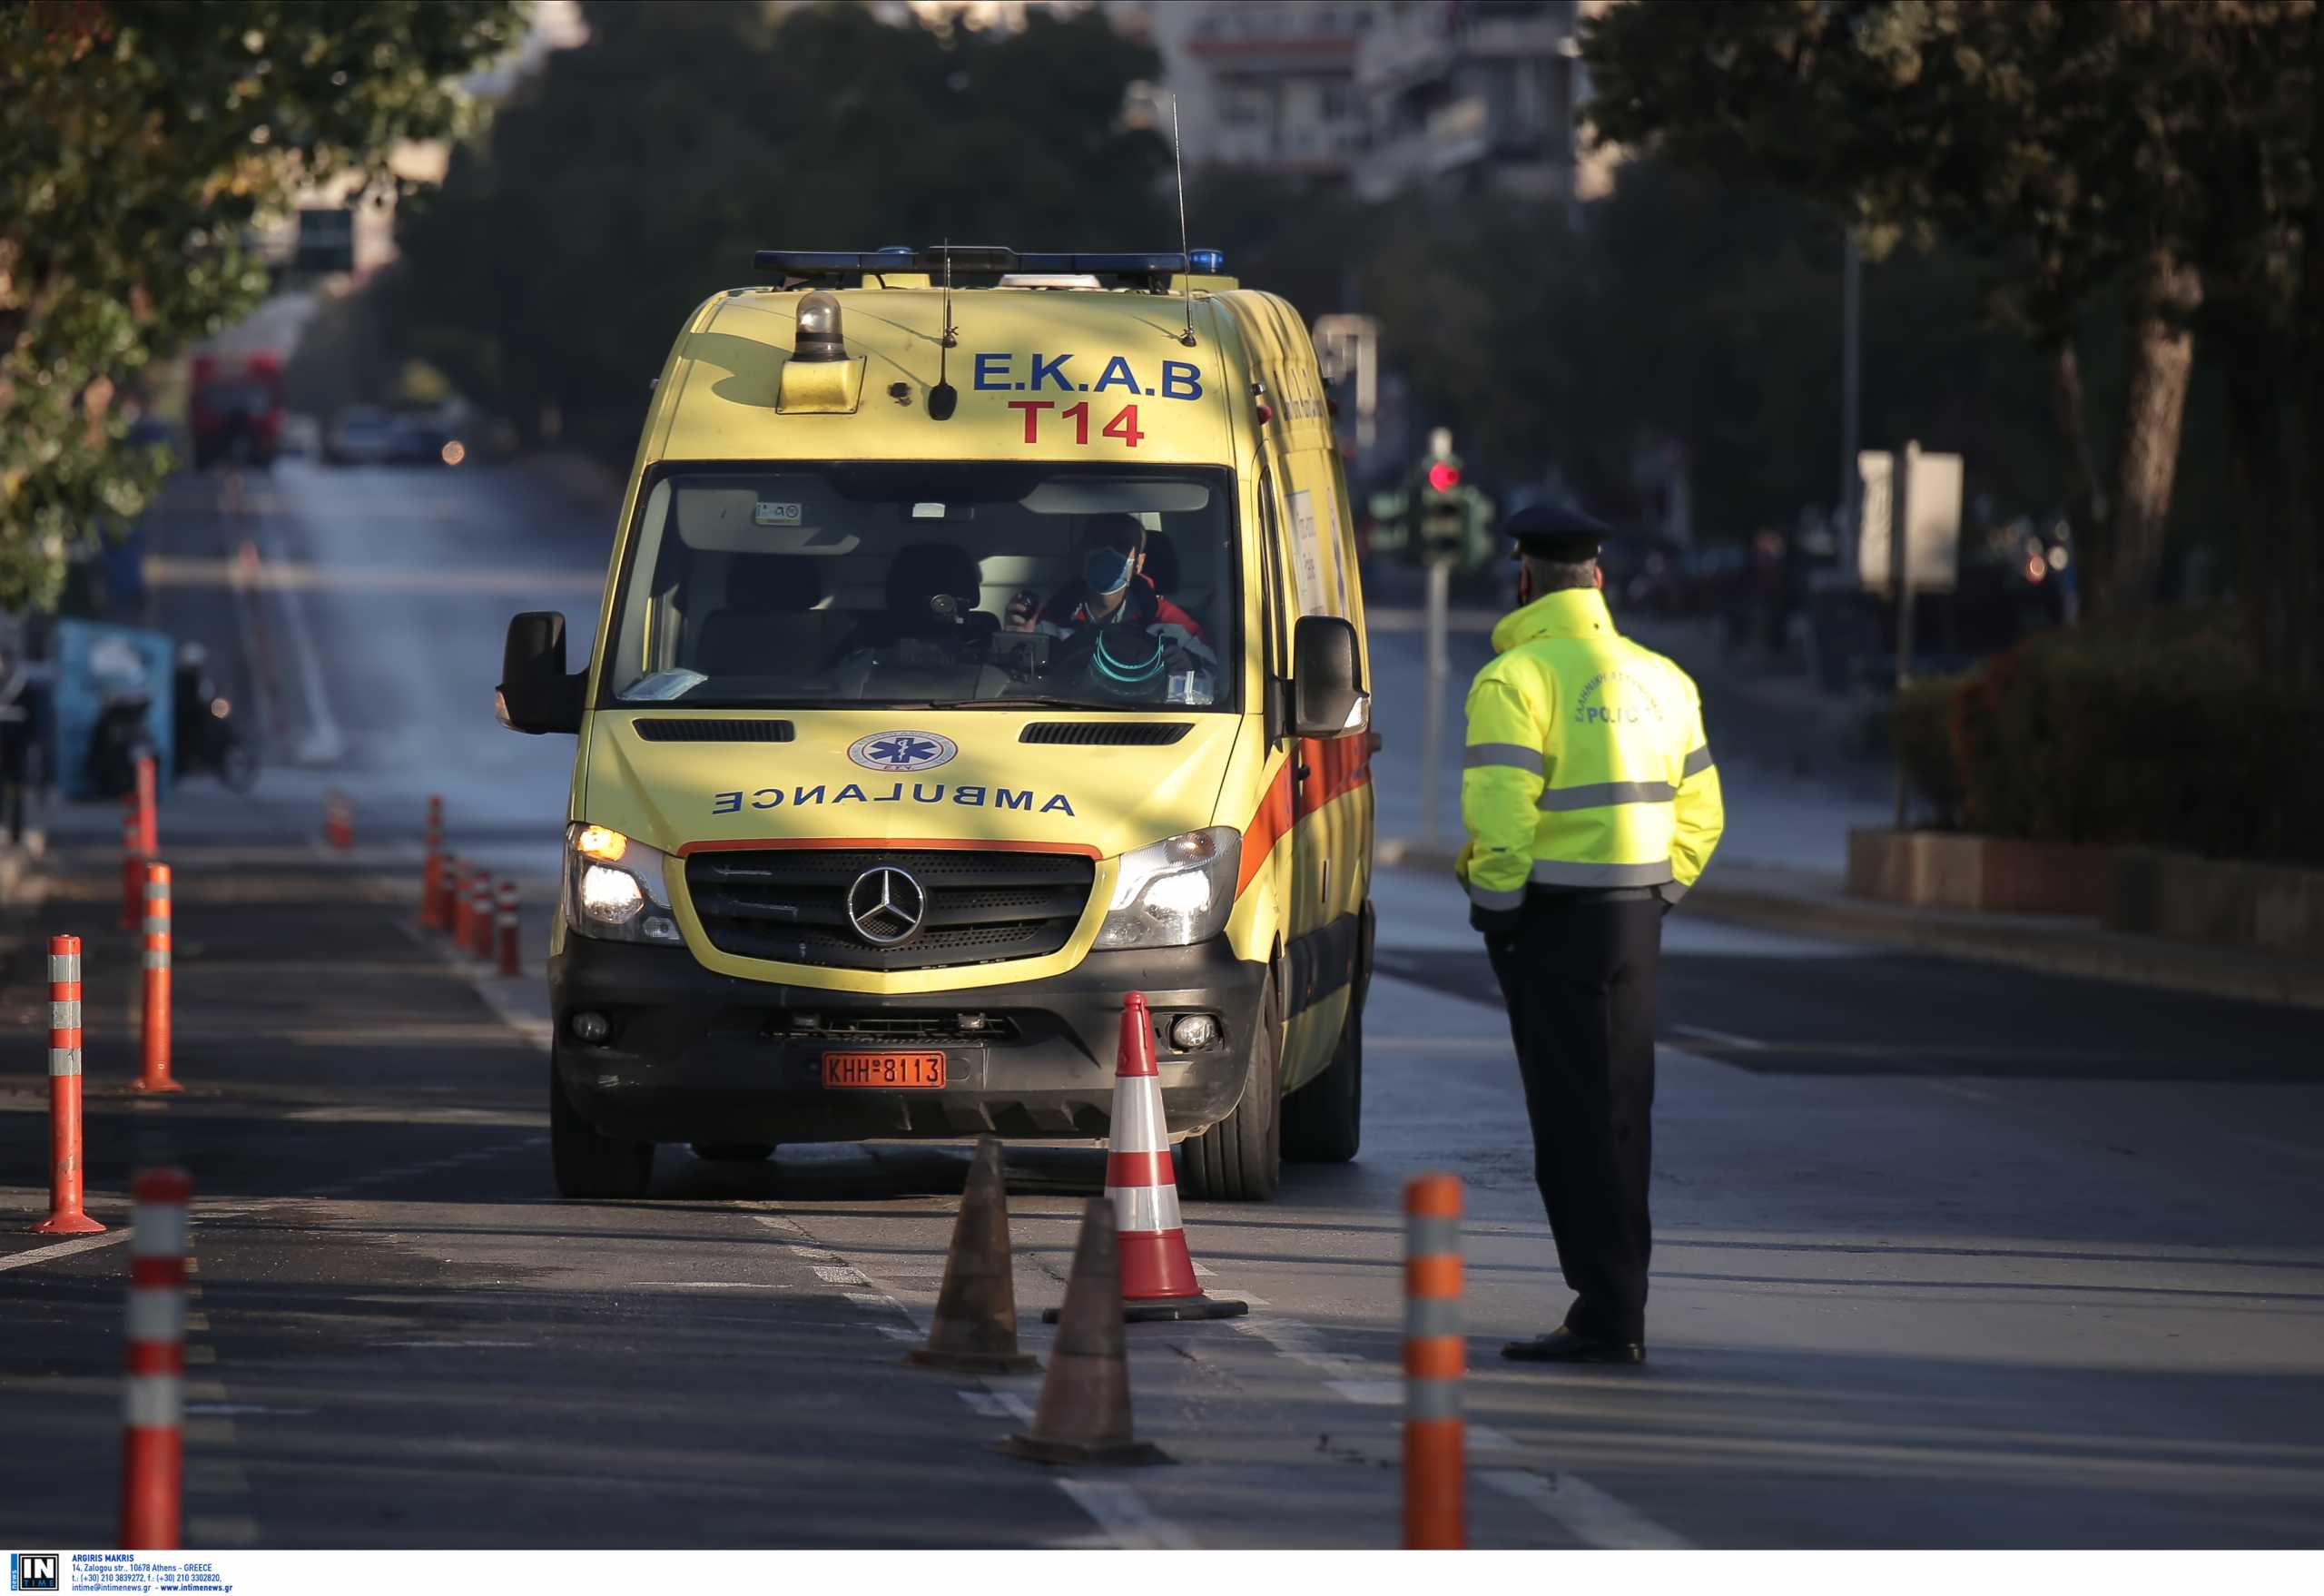 Θεσσαλονίκη: Άγρια επίθεση με σπασμένο μπουκάλι – Αγωνία για τον τραυματία με χτυπήματα στο κεφάλι